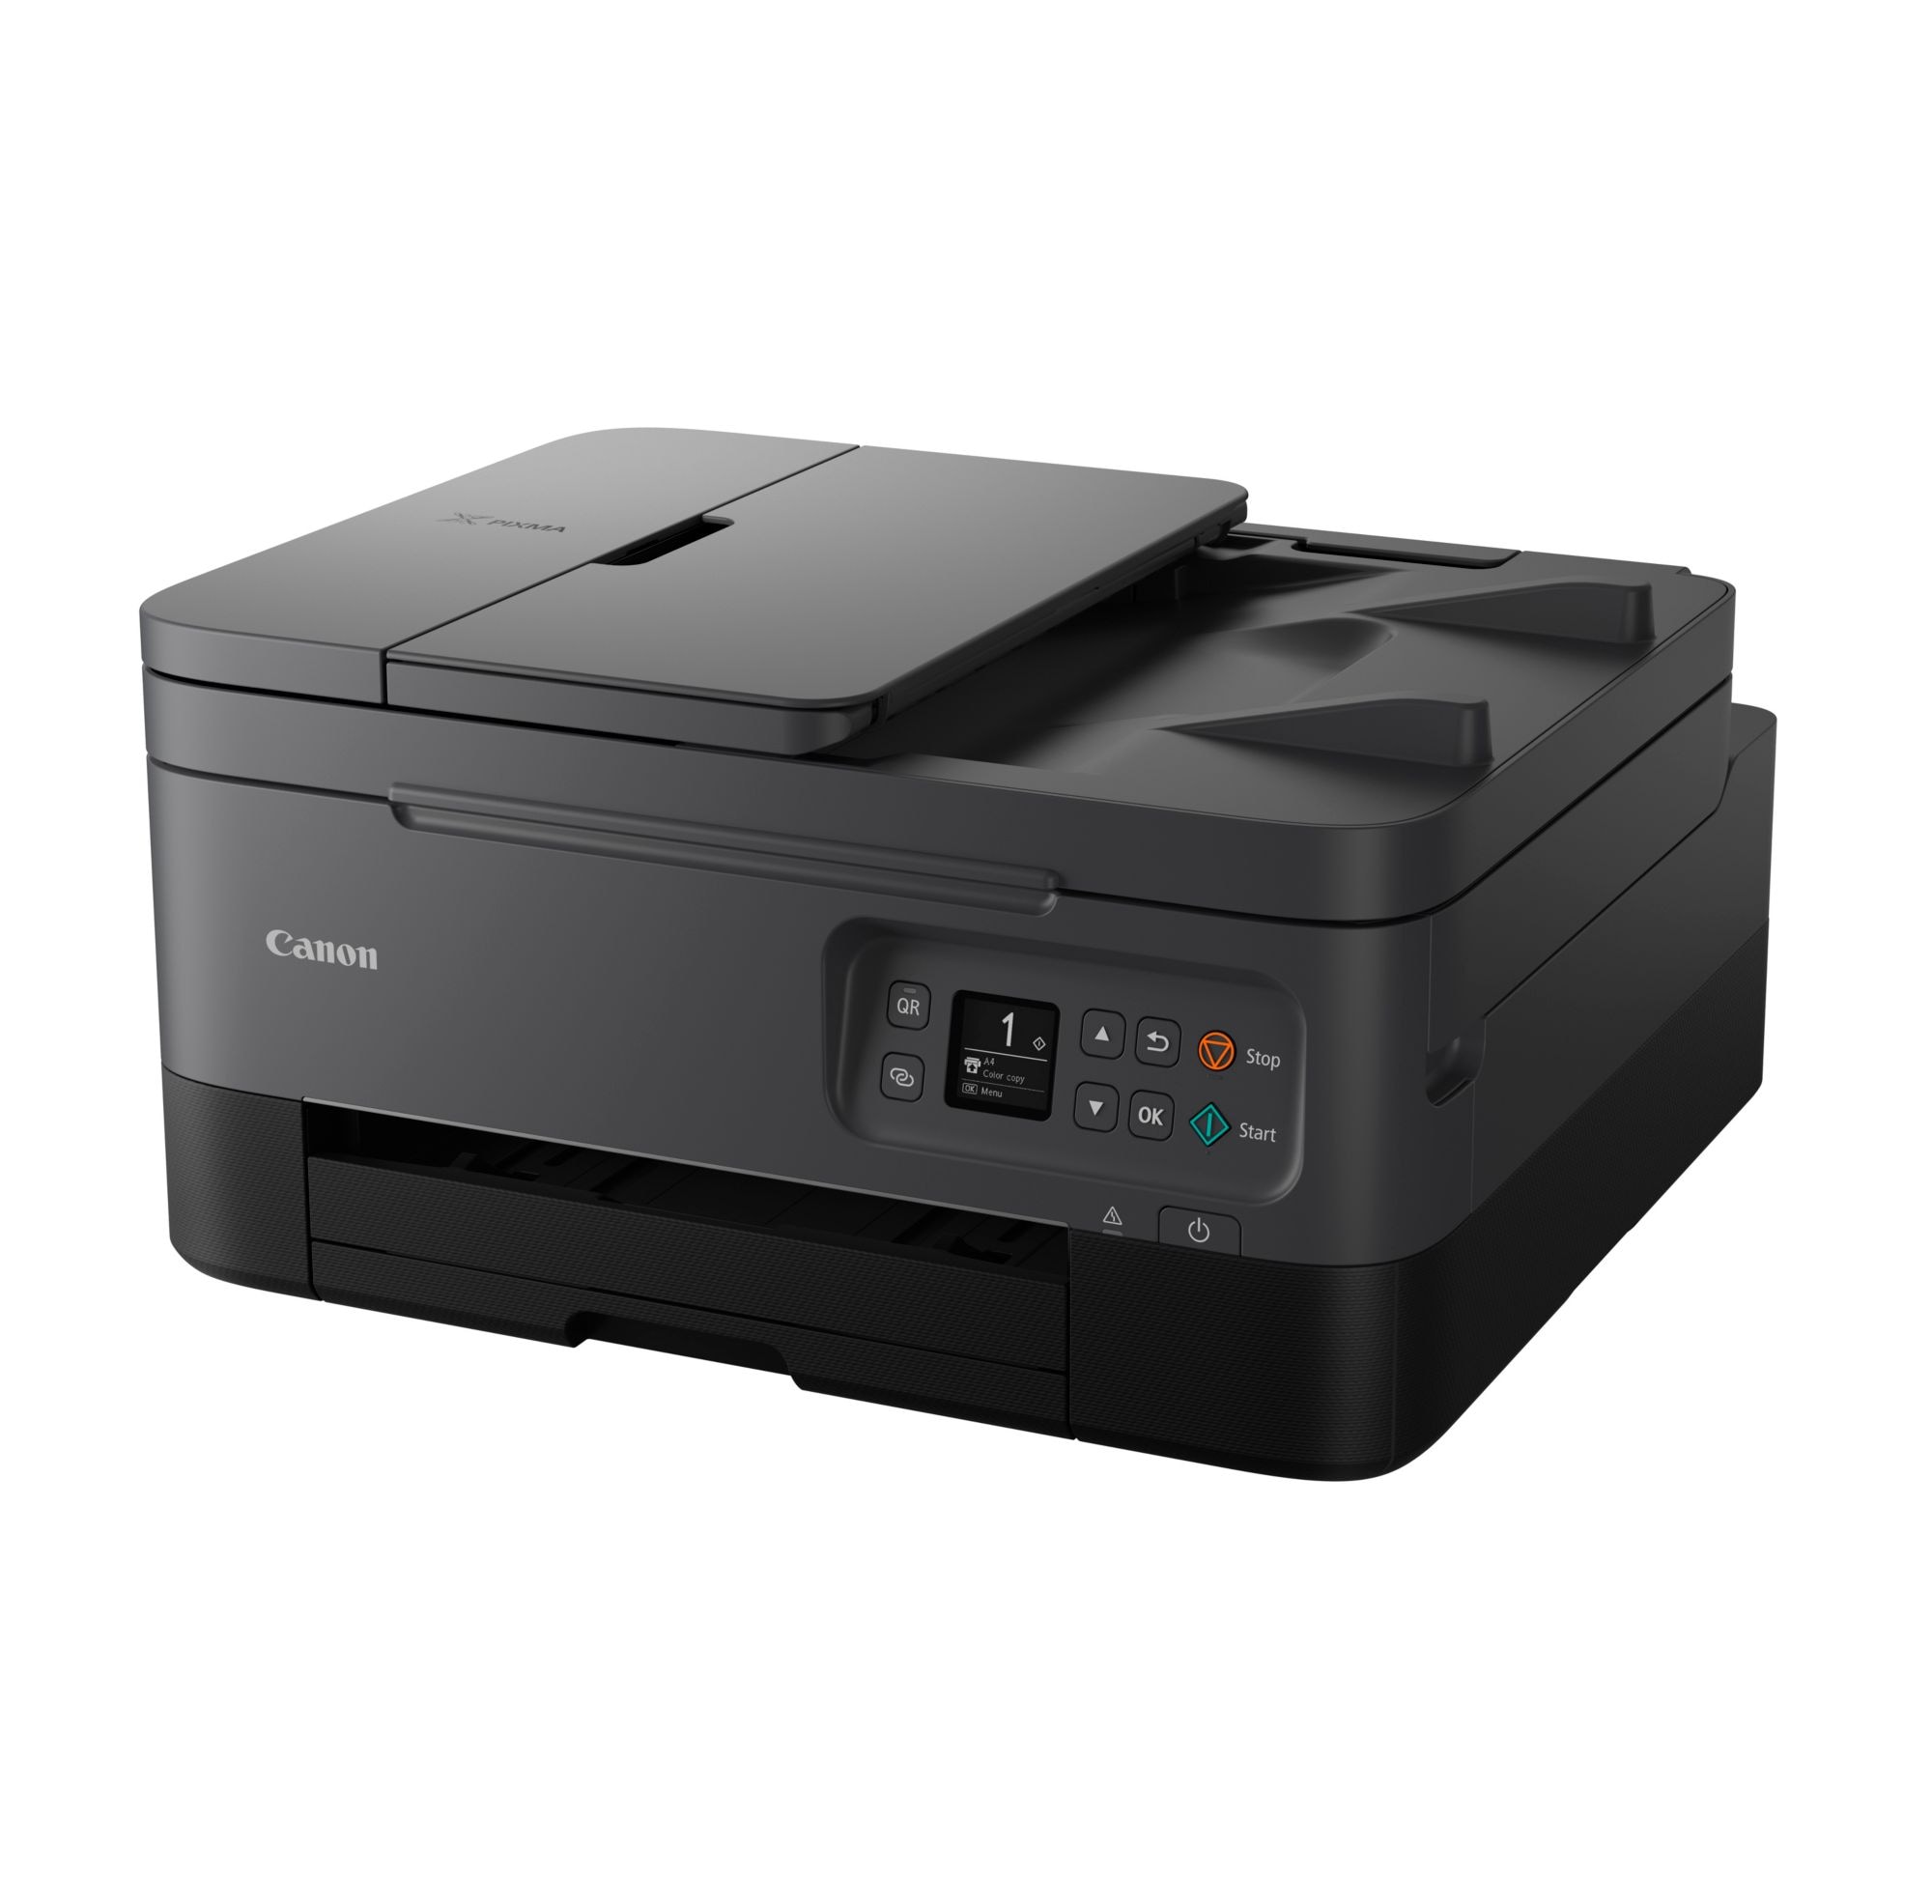 Tintenstrahl-Multifunktionsdrucker TS7450a PIXMA Cyberport Scanner WLAN Canon ++ Kopierer